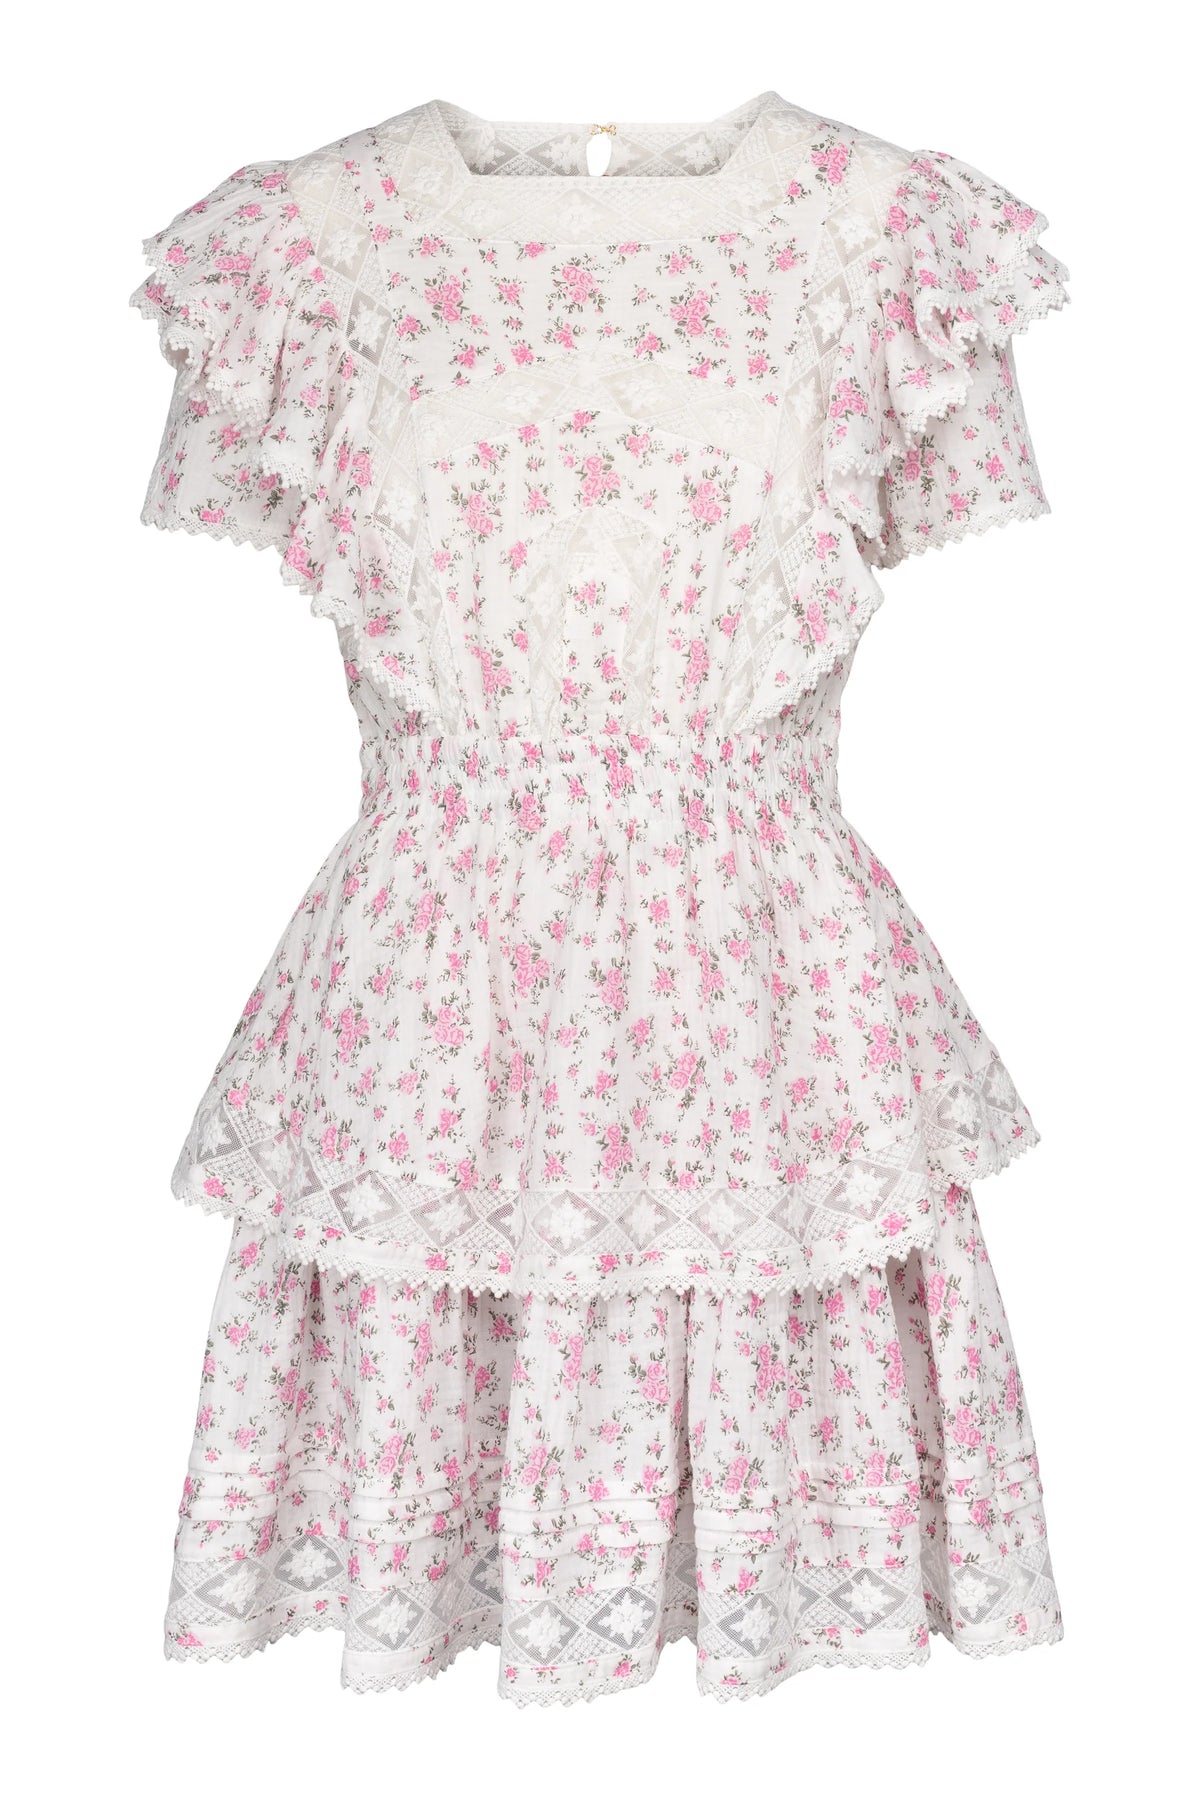 Alexa Dress - Pink Boquet